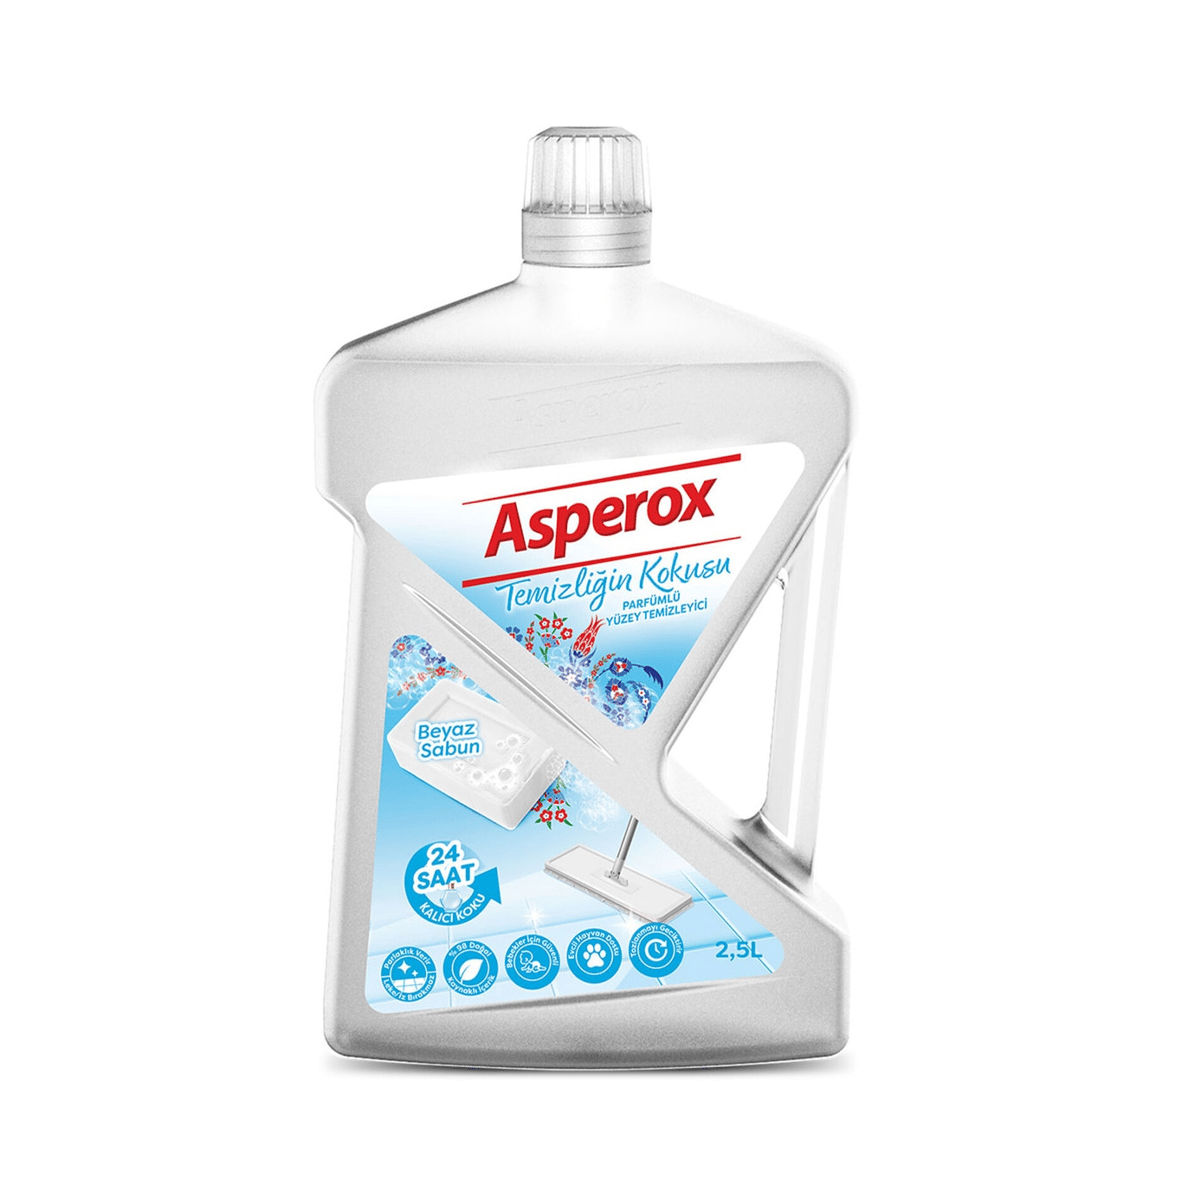 Asperox Yüzey Temizleyici Temizliğin Kokusu Beyaz 2,5 Lt